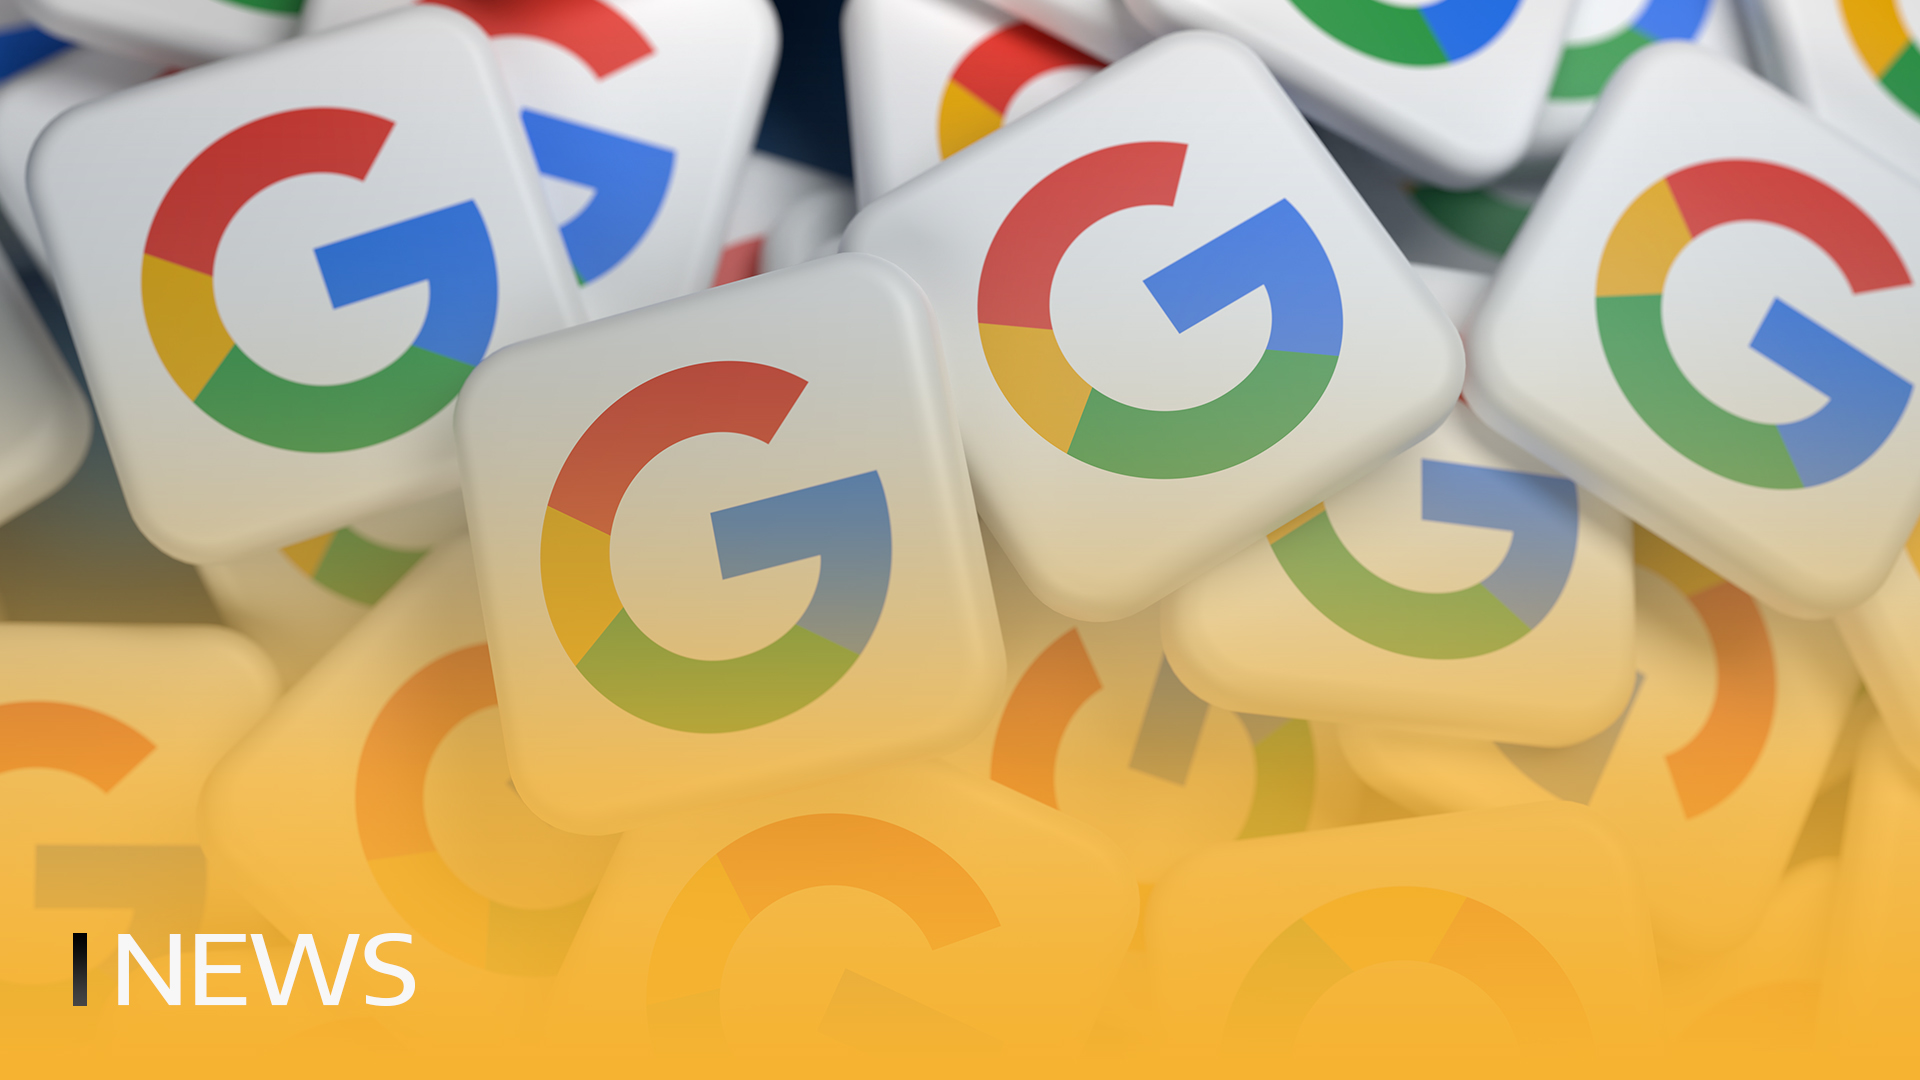 La búsqueda de Onchain en Google alcanza su máximo histórico